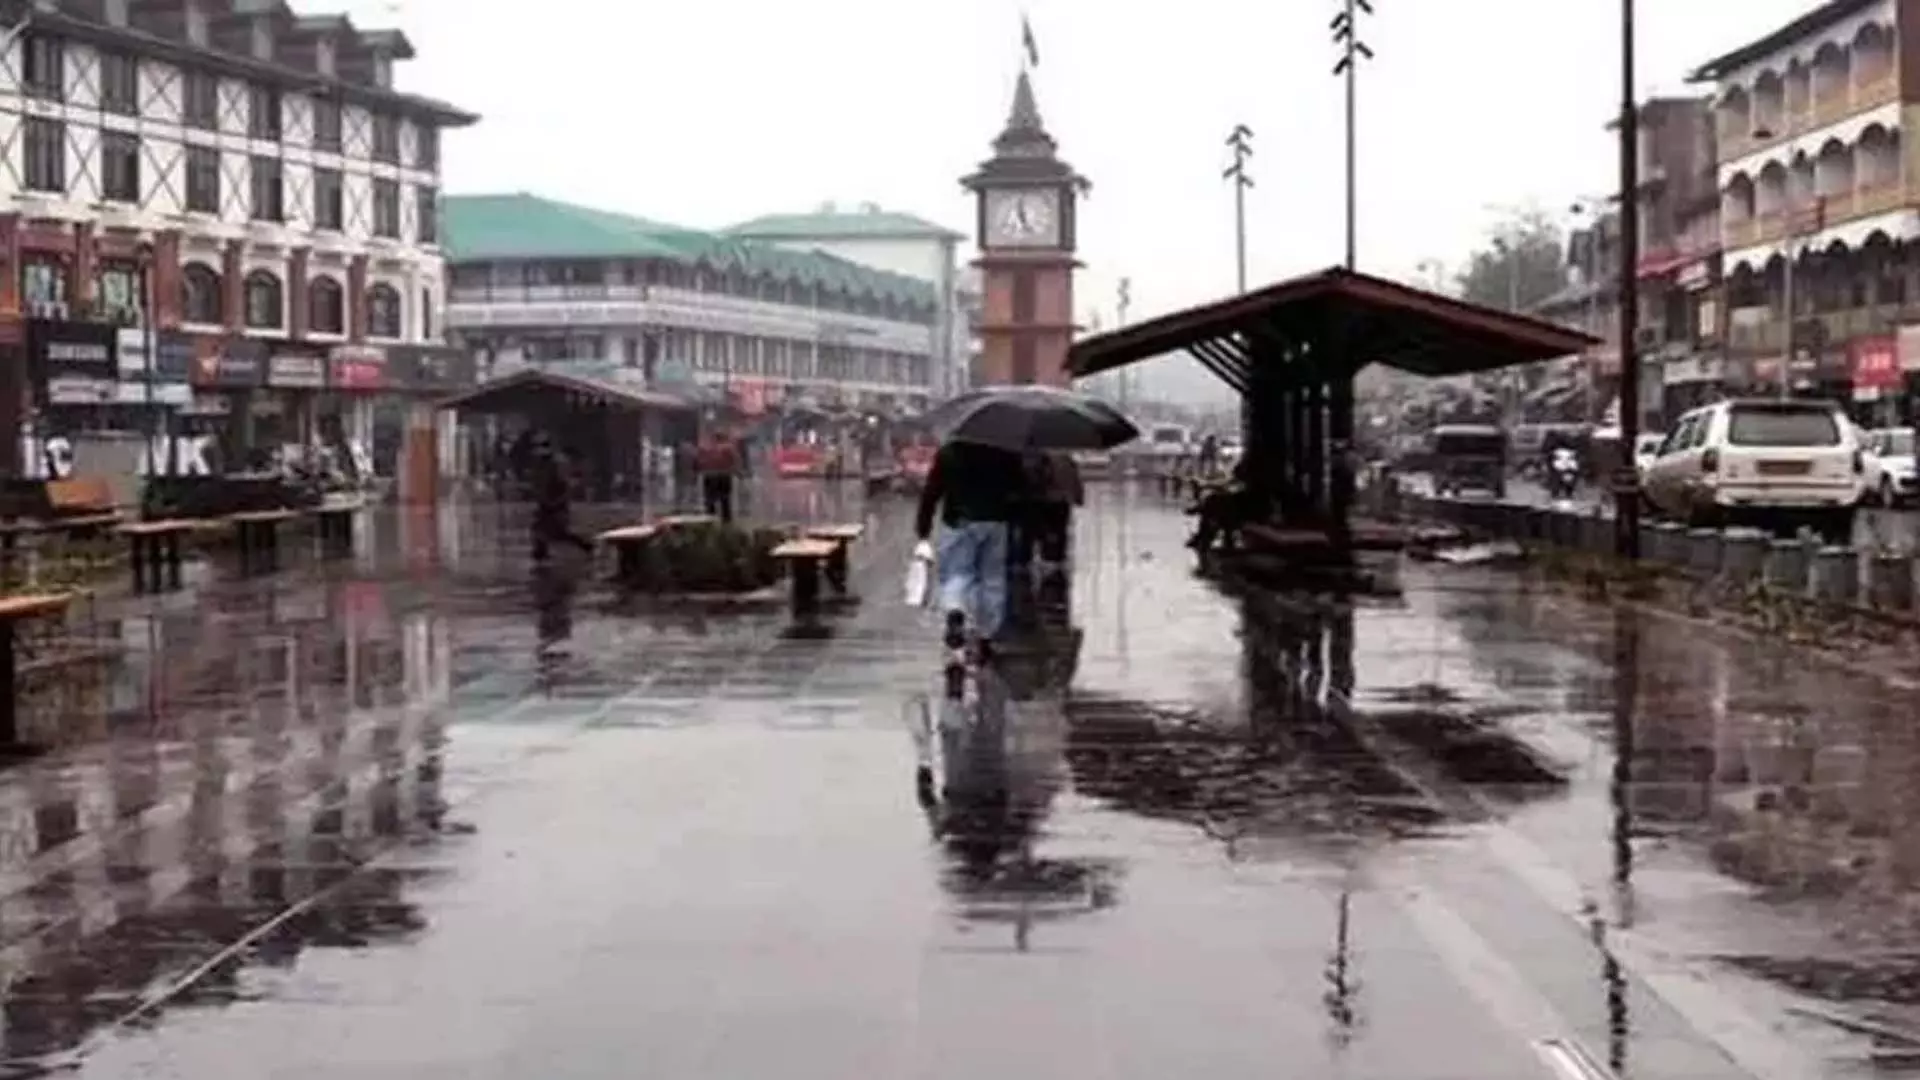 मौसम विभाग ने जम्मूकश्मीर में आज से और बारिश होने का अनुमान लगाया